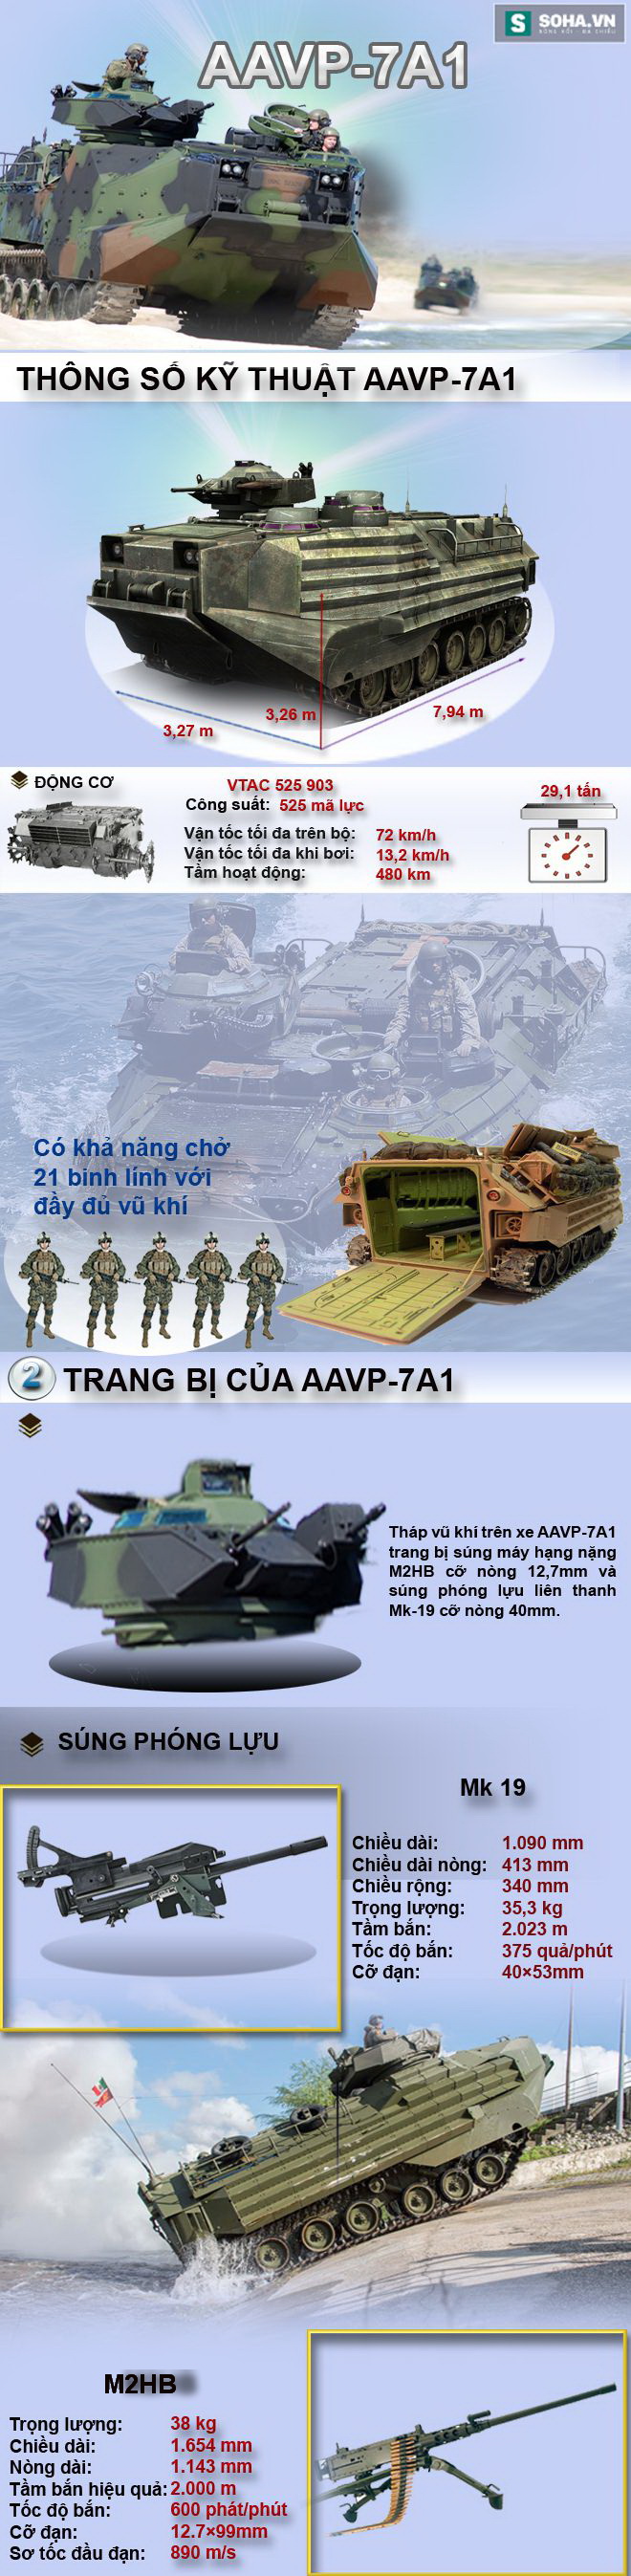 Việt Nam có nên mua xe thiết giáp AAVP-7A1 cho Hải quân đánh bộ? - Ảnh 1.